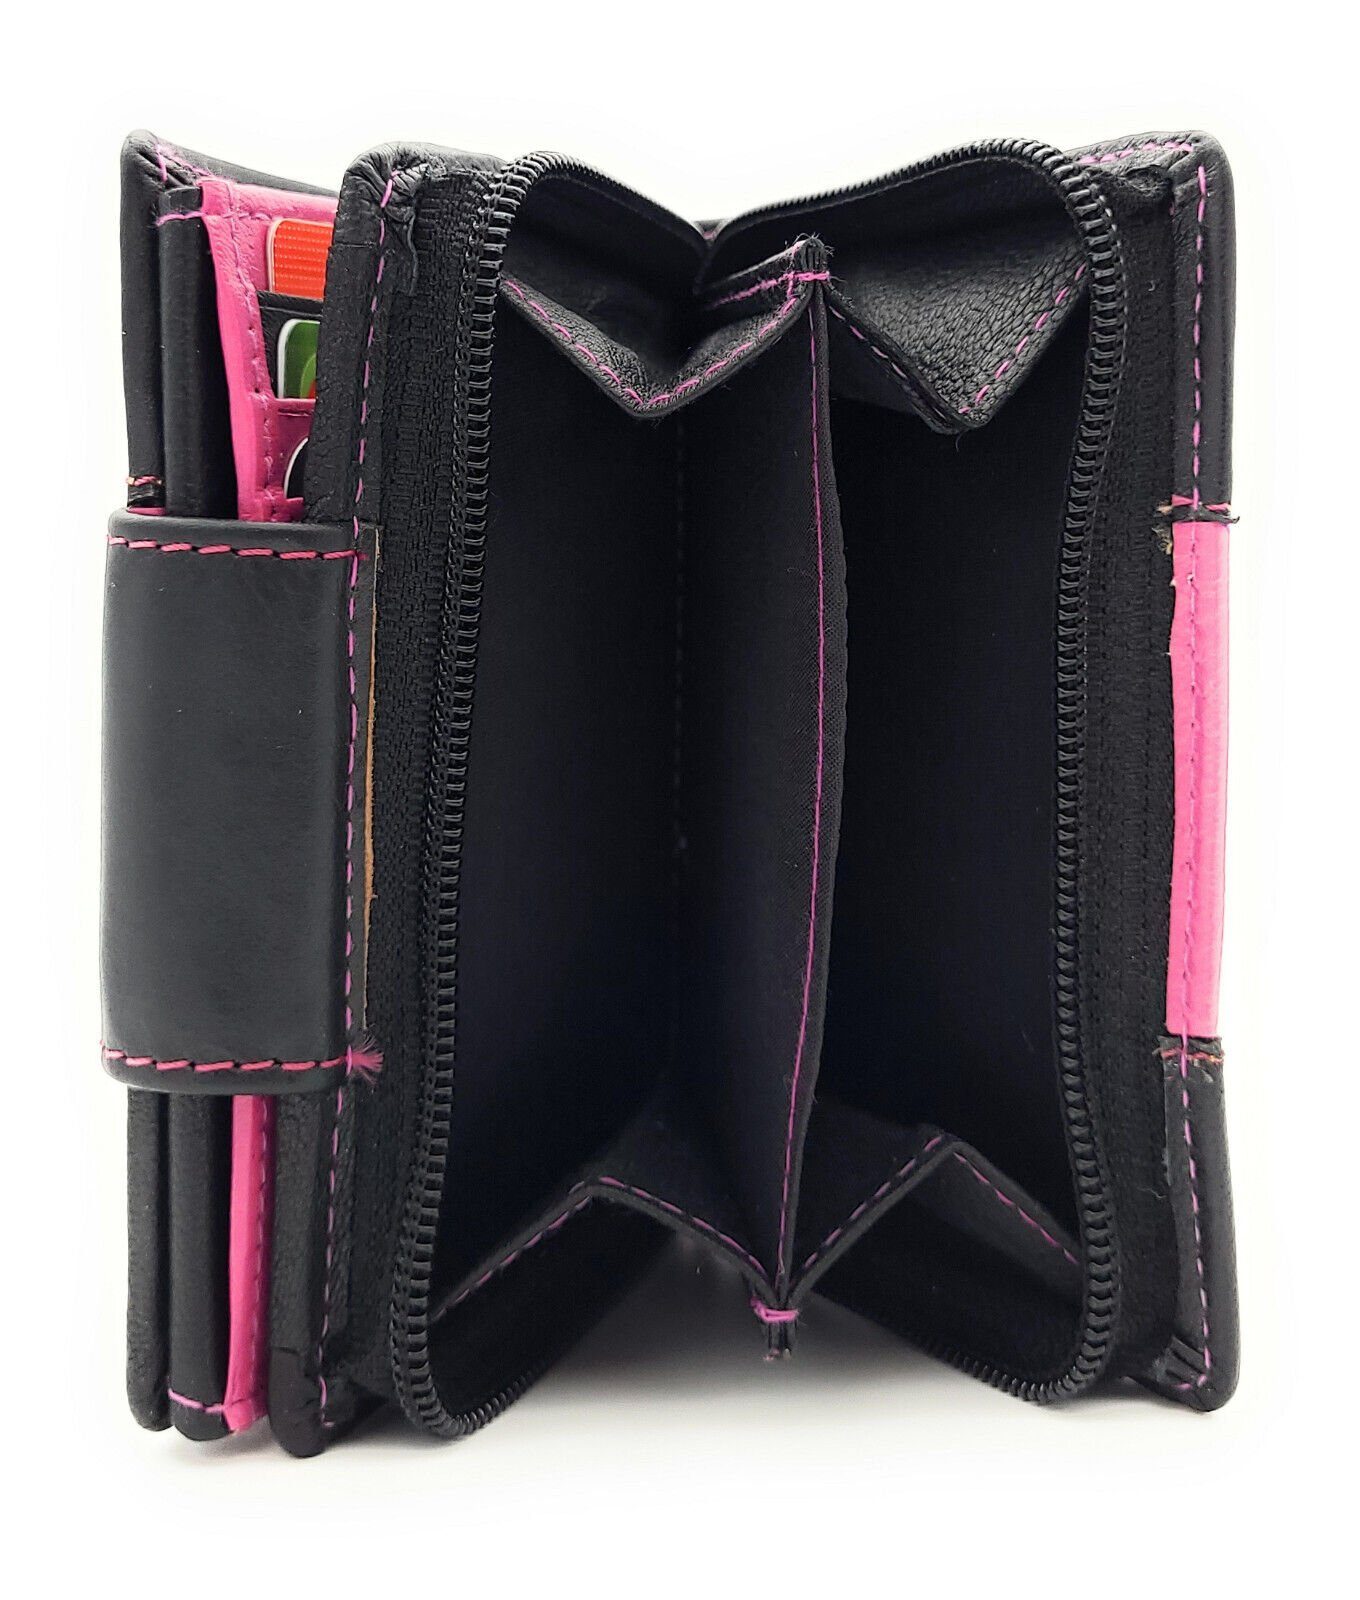 Portemonnaie pink Nappaleder, mit Platz, Lemasi Außenriegel, viel echt Leder Damen schwarz Geldbörse